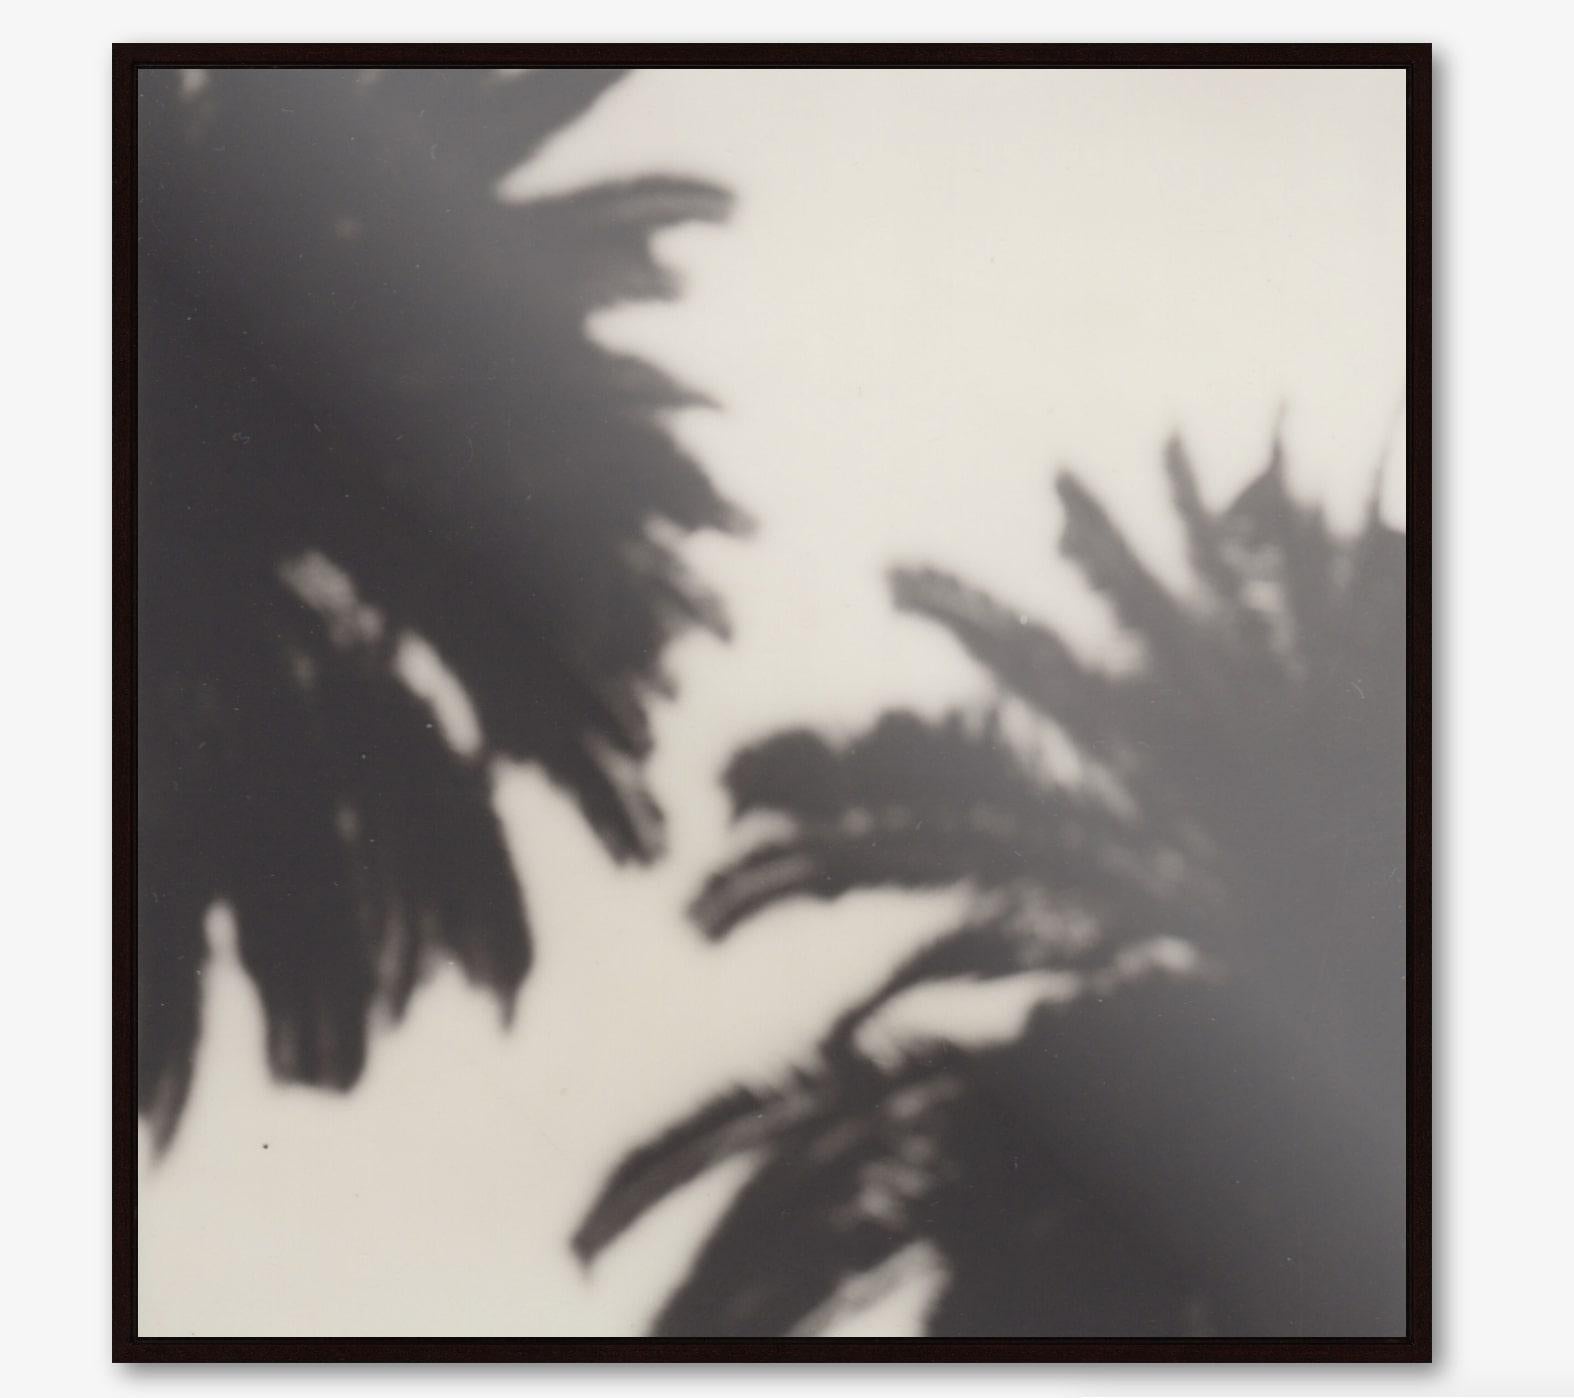 Calme comme un palmier - Gravure photographique contemporaine en noir et blanc du 21e siècle - Contemporain Print par Pia Clodi